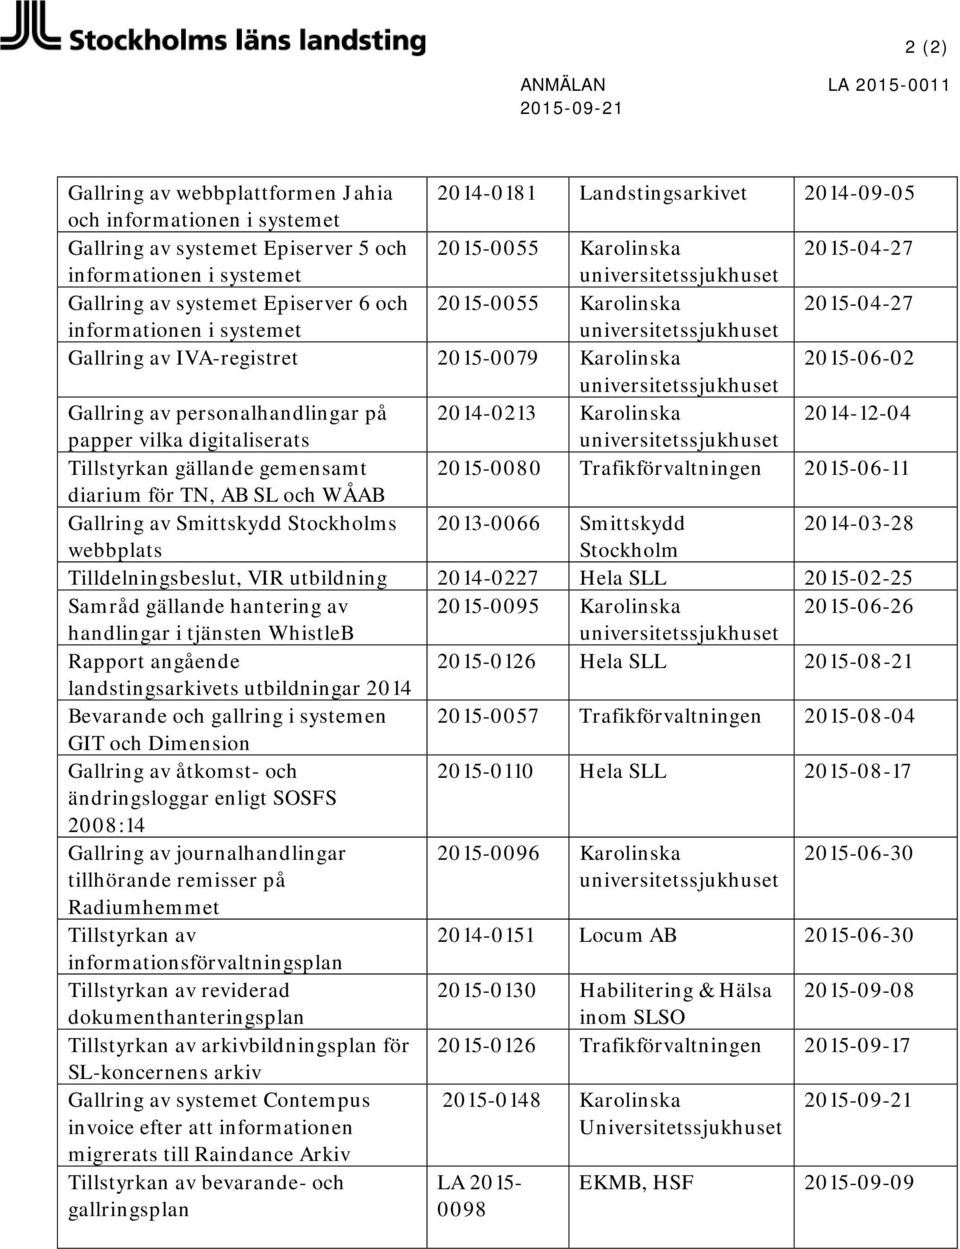 personalhandlingar på 2014-0213 Karolinska 2014-12-04 papper vilka digitaliserats Tillstyrkan gällande gemensamt 2015-0080 Trafikförvaltningen 2015-06-11 diarium för TN, AB SL och WÅAB Gallring av